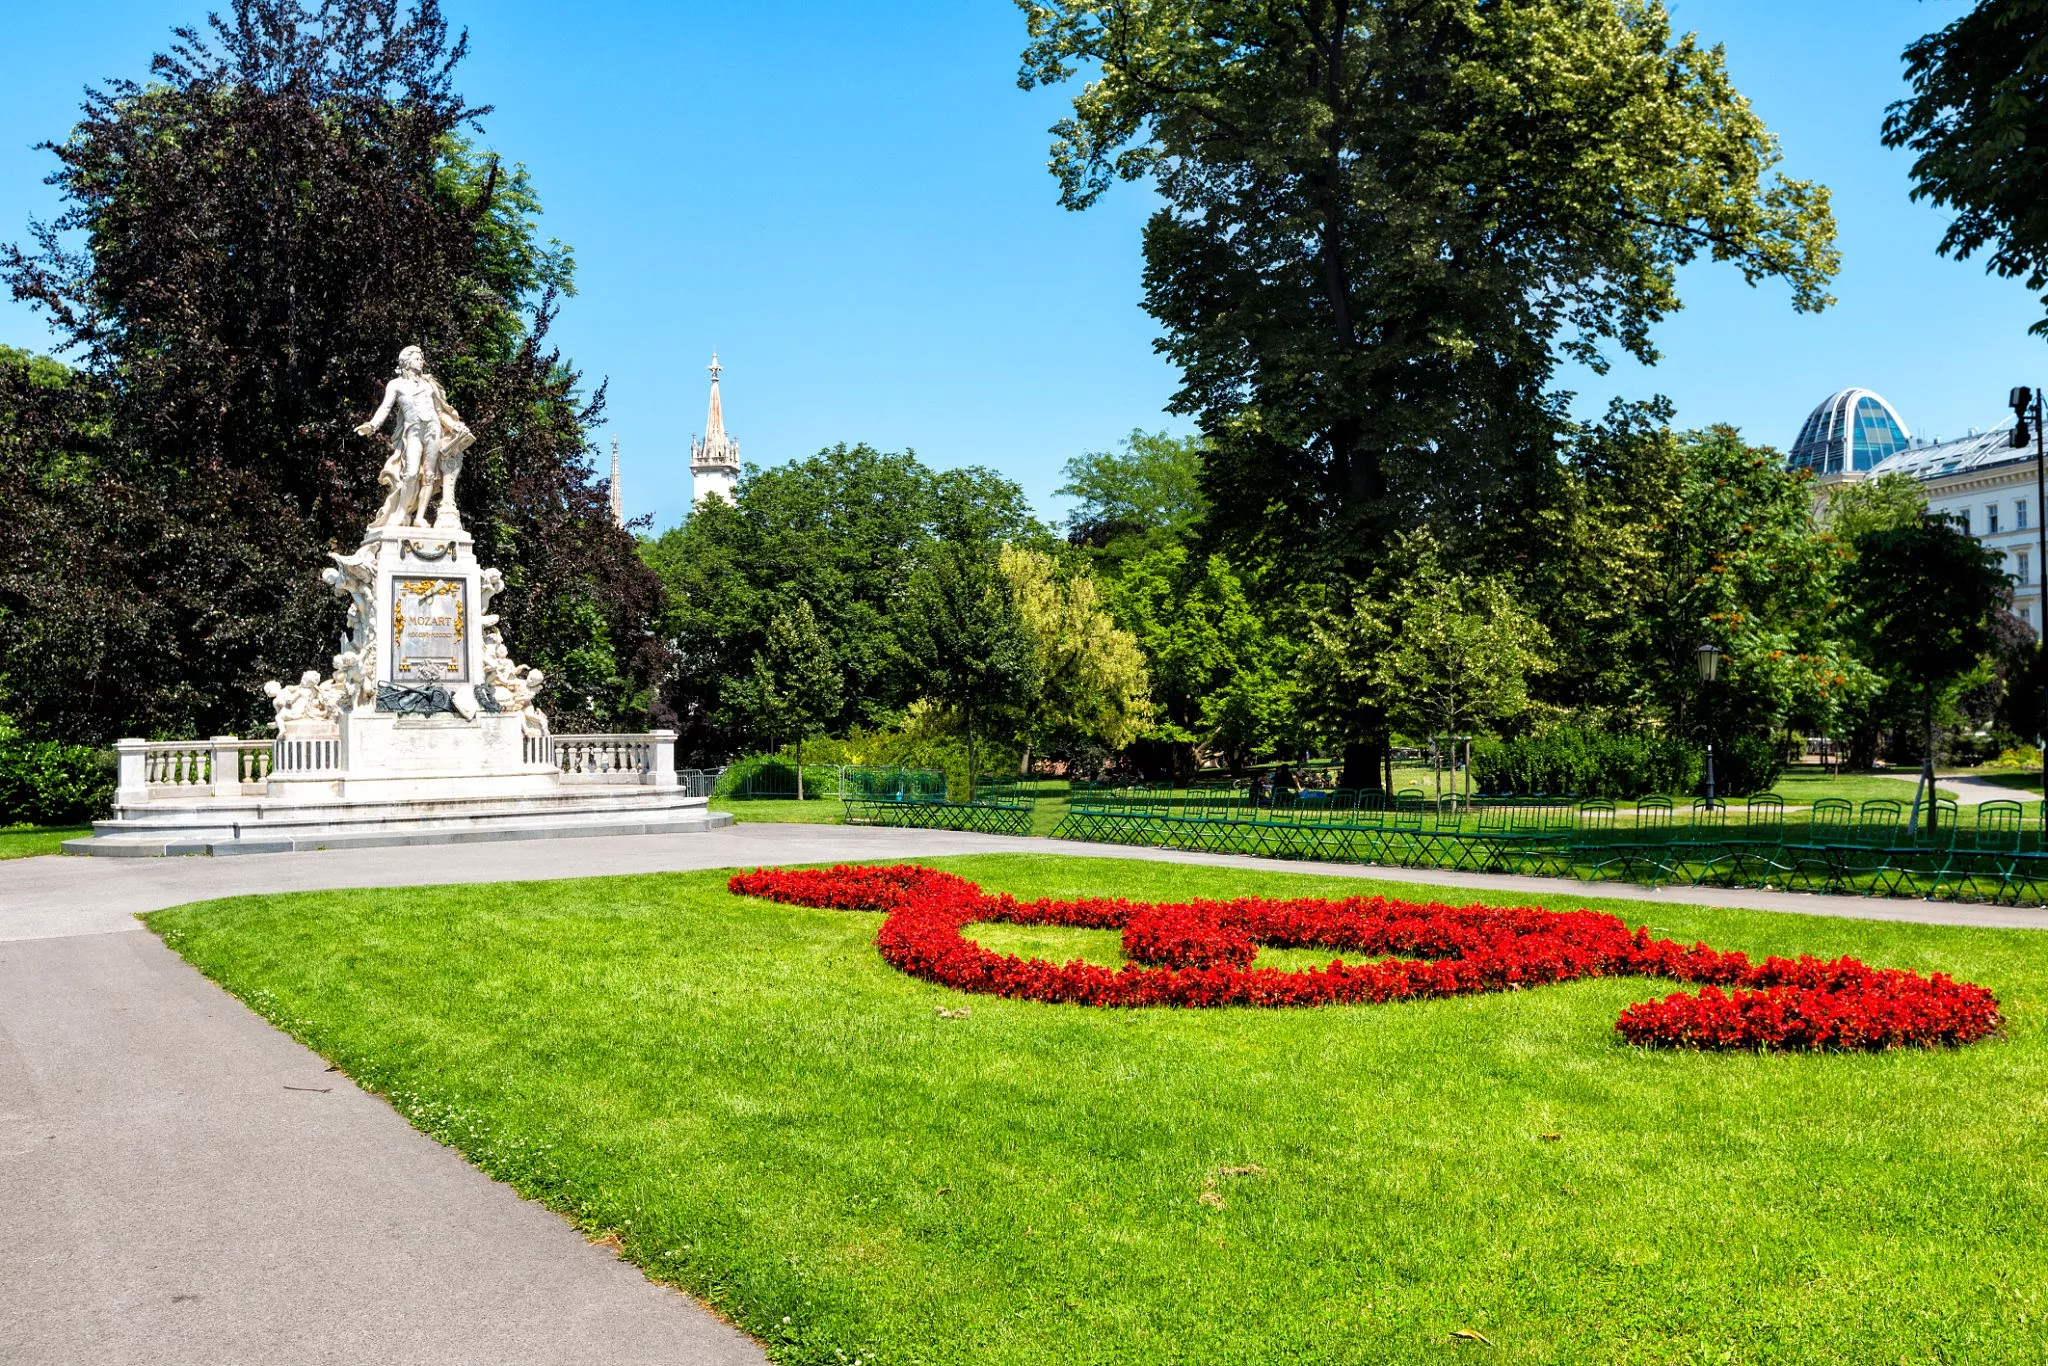 Burggarten in Austria, Europe | Parks - Rated 4